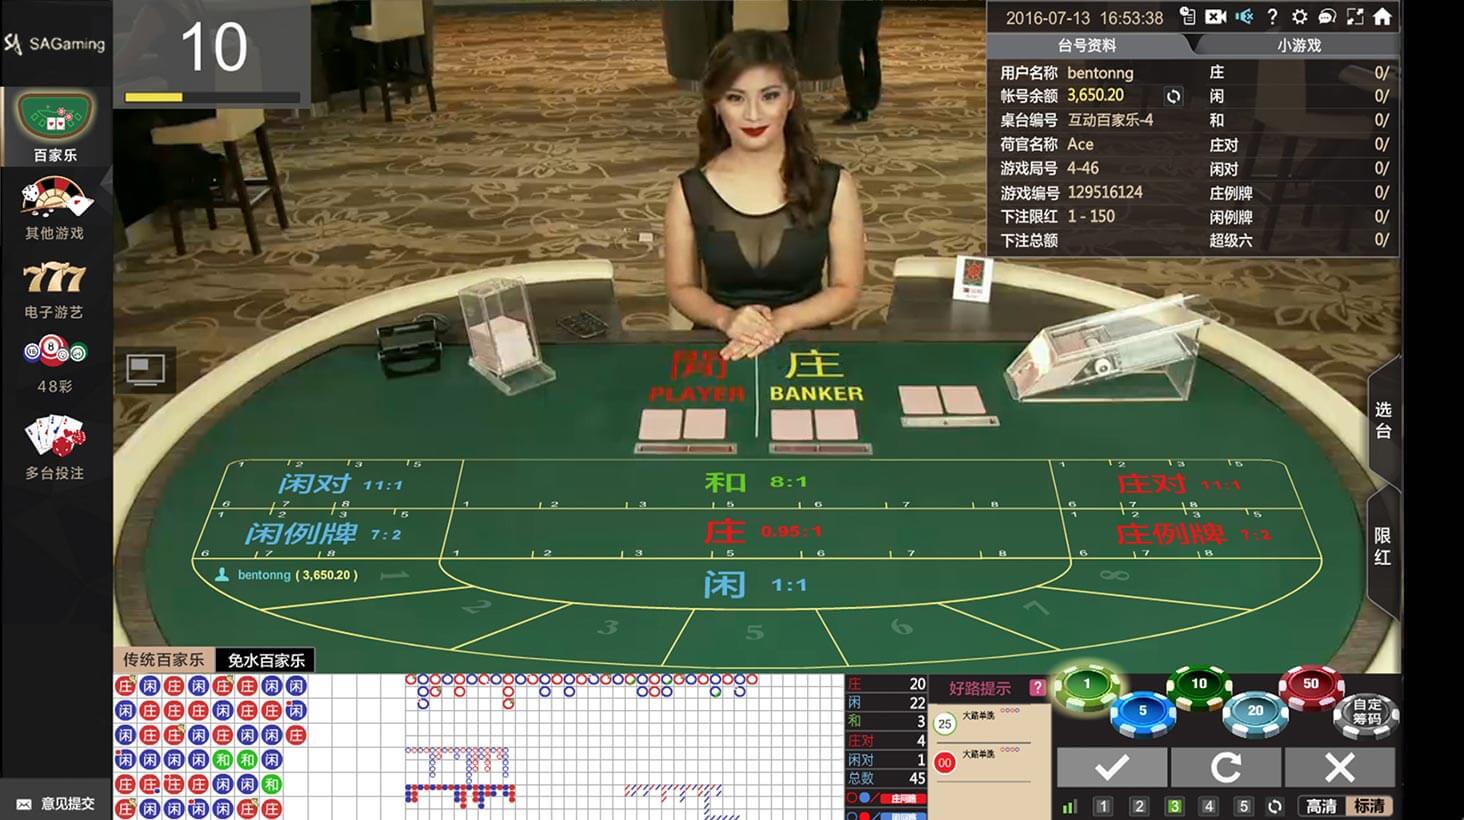 吃角子老虎機在台灣在線賭場雙骰子遊戲中應該避免哪些錯誤